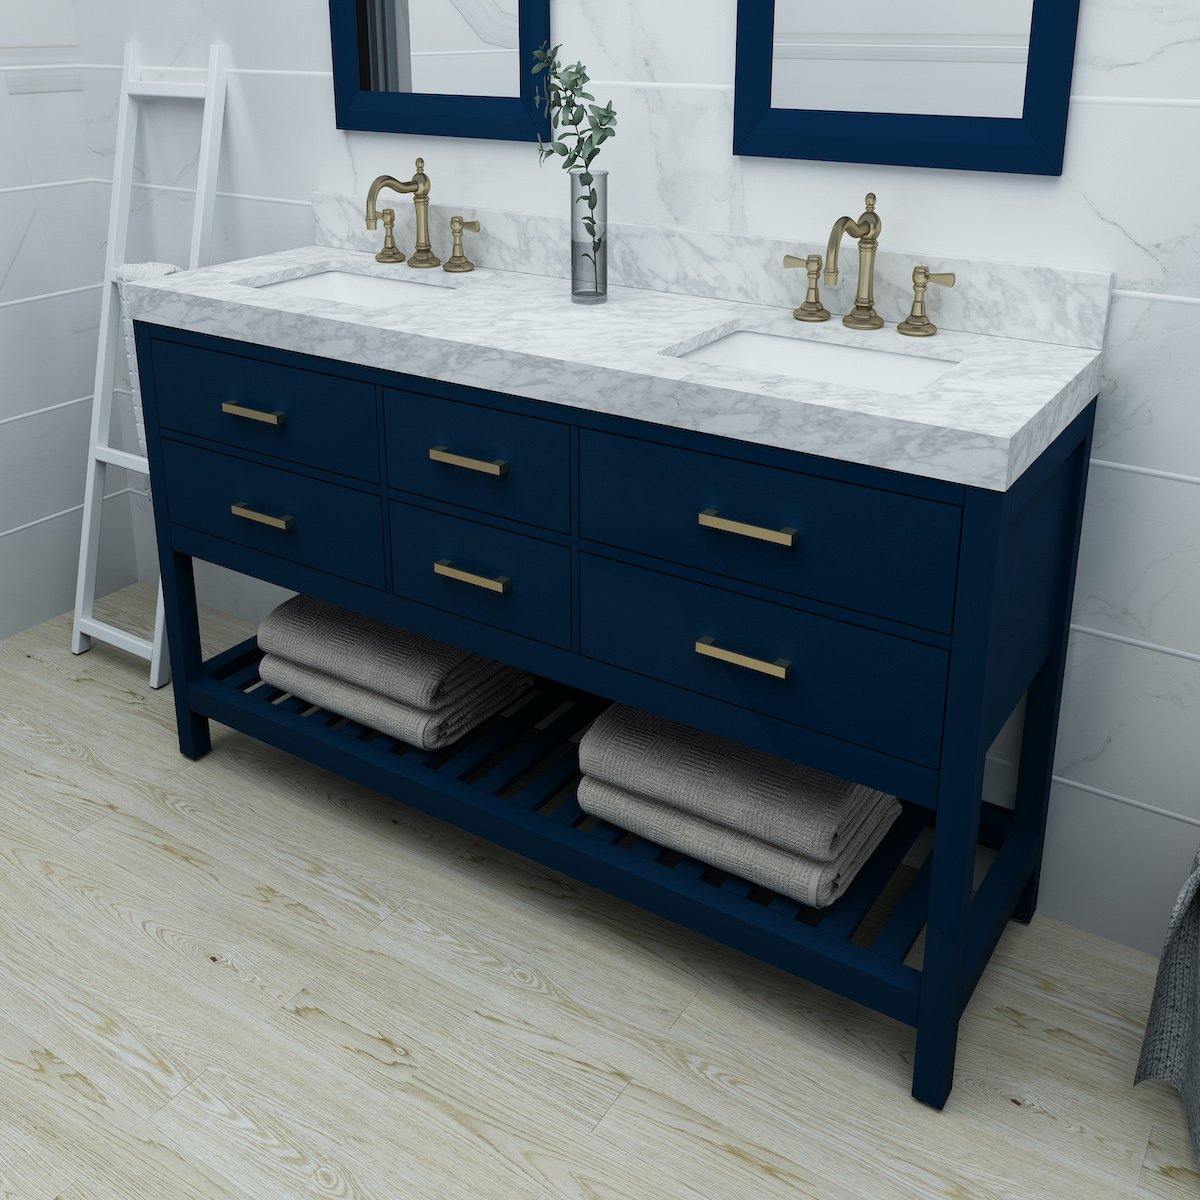 Ancerre Designs Elizabeth 72 Inch Heritage Blue Double Vanity in Bathroom